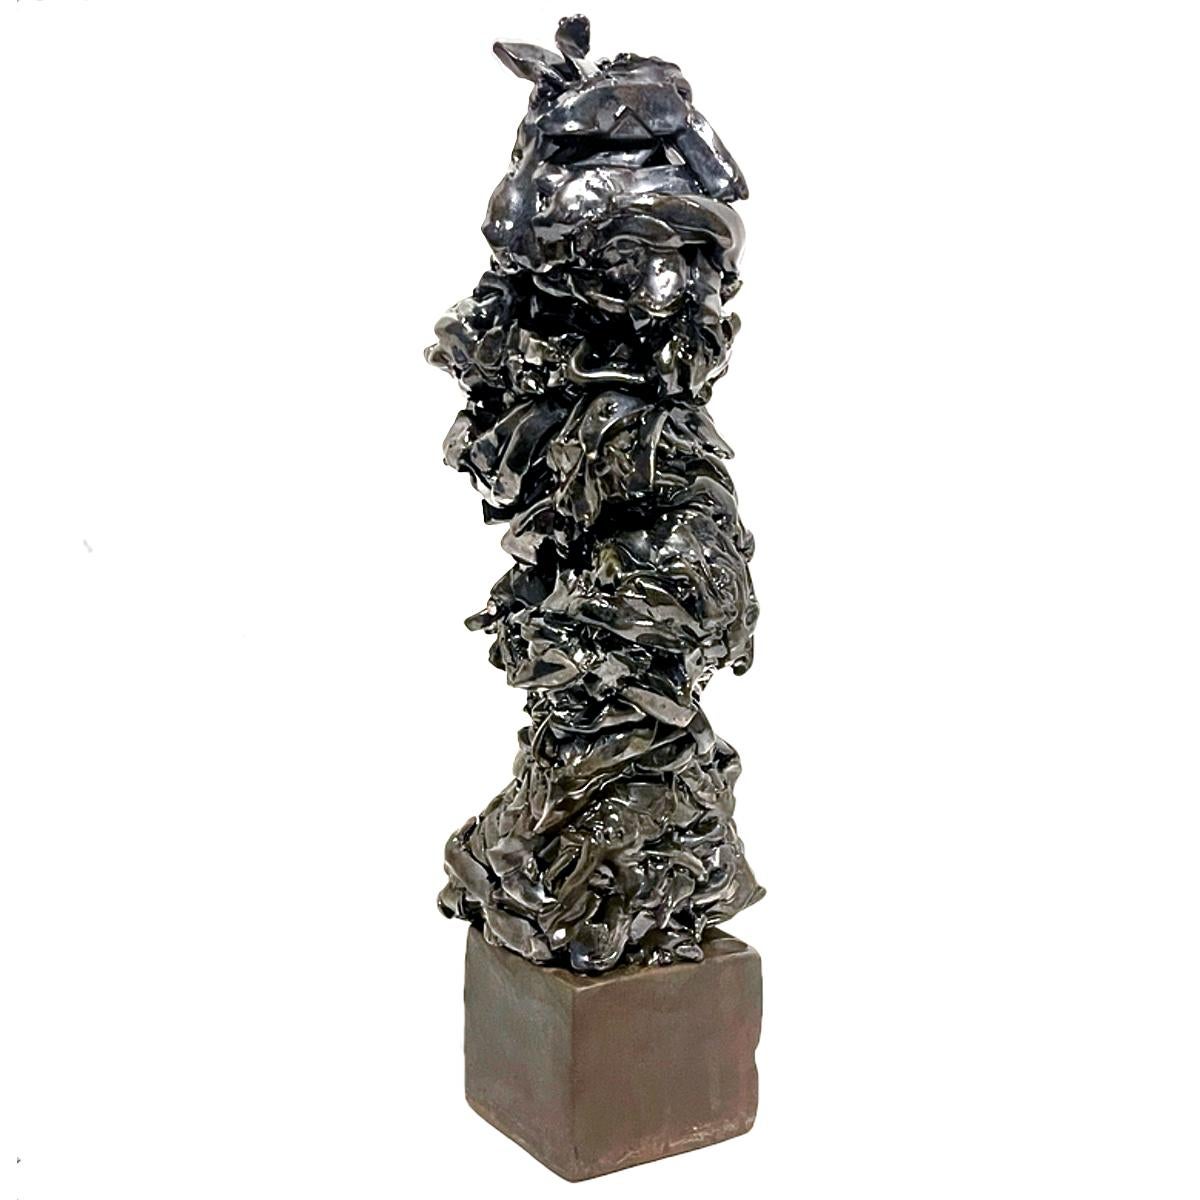 Judy Engel Figurative Sculpture – Große Metallic Palladium Abstrakt-expressionistische brutalistische Totem-Skulptur